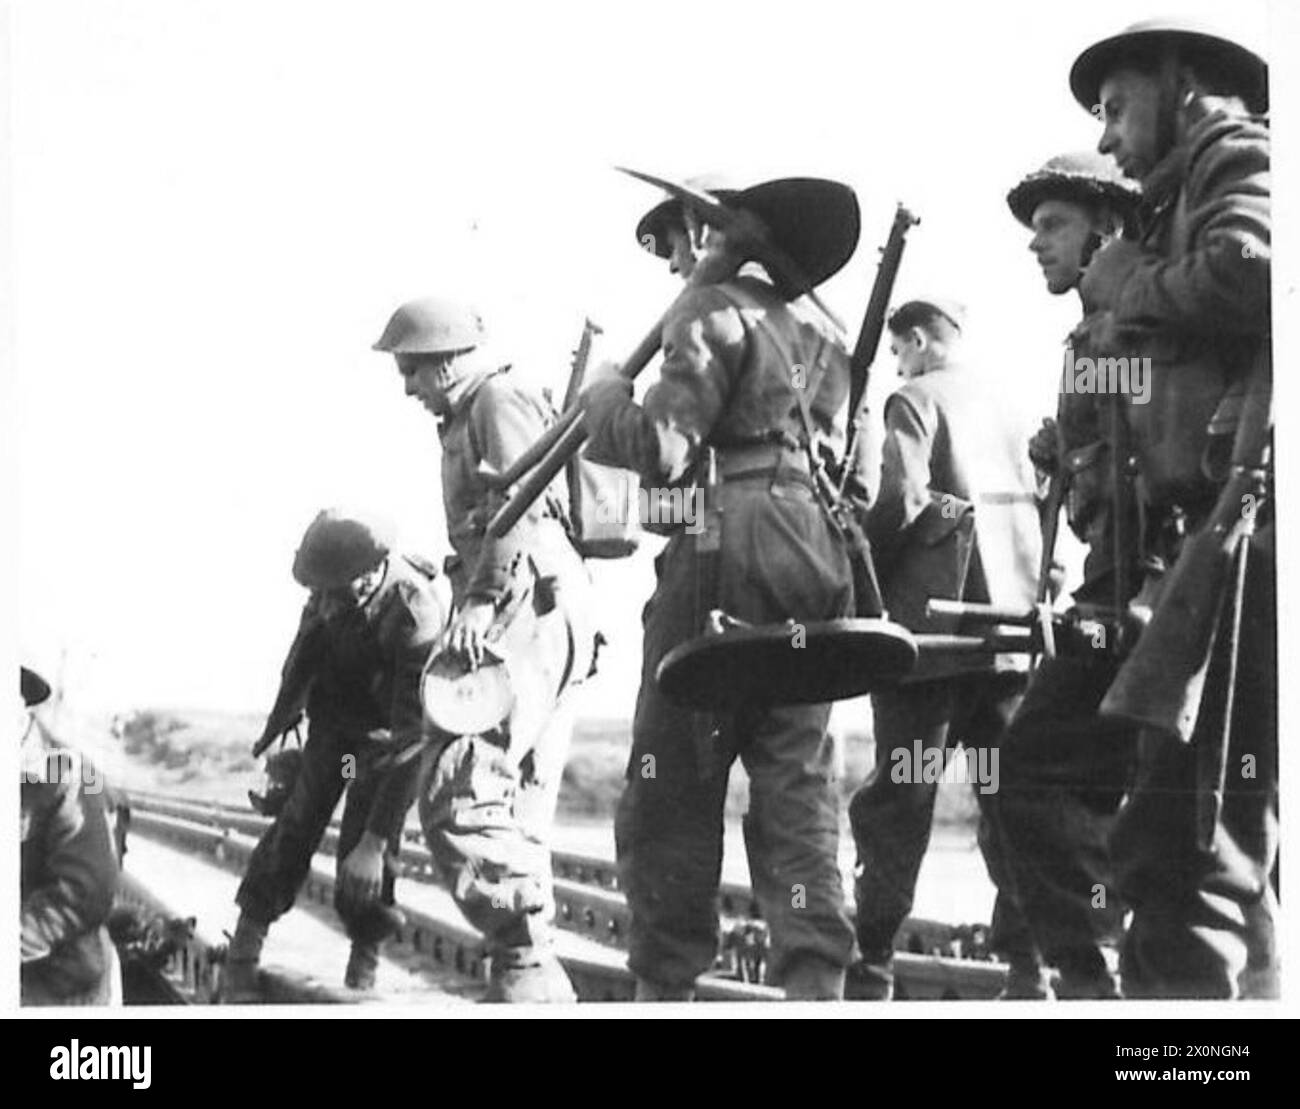 ITALIE : CINQUIÈME armissement de LA RIVIÈRE GARIGLIANO - les ingénieurs royaux embarquent pour la rive opposée de la rivière pour réparer un pont flottant endommagé par le feu ennemi. Négatif photographique, Armée britannique Banque D'Images